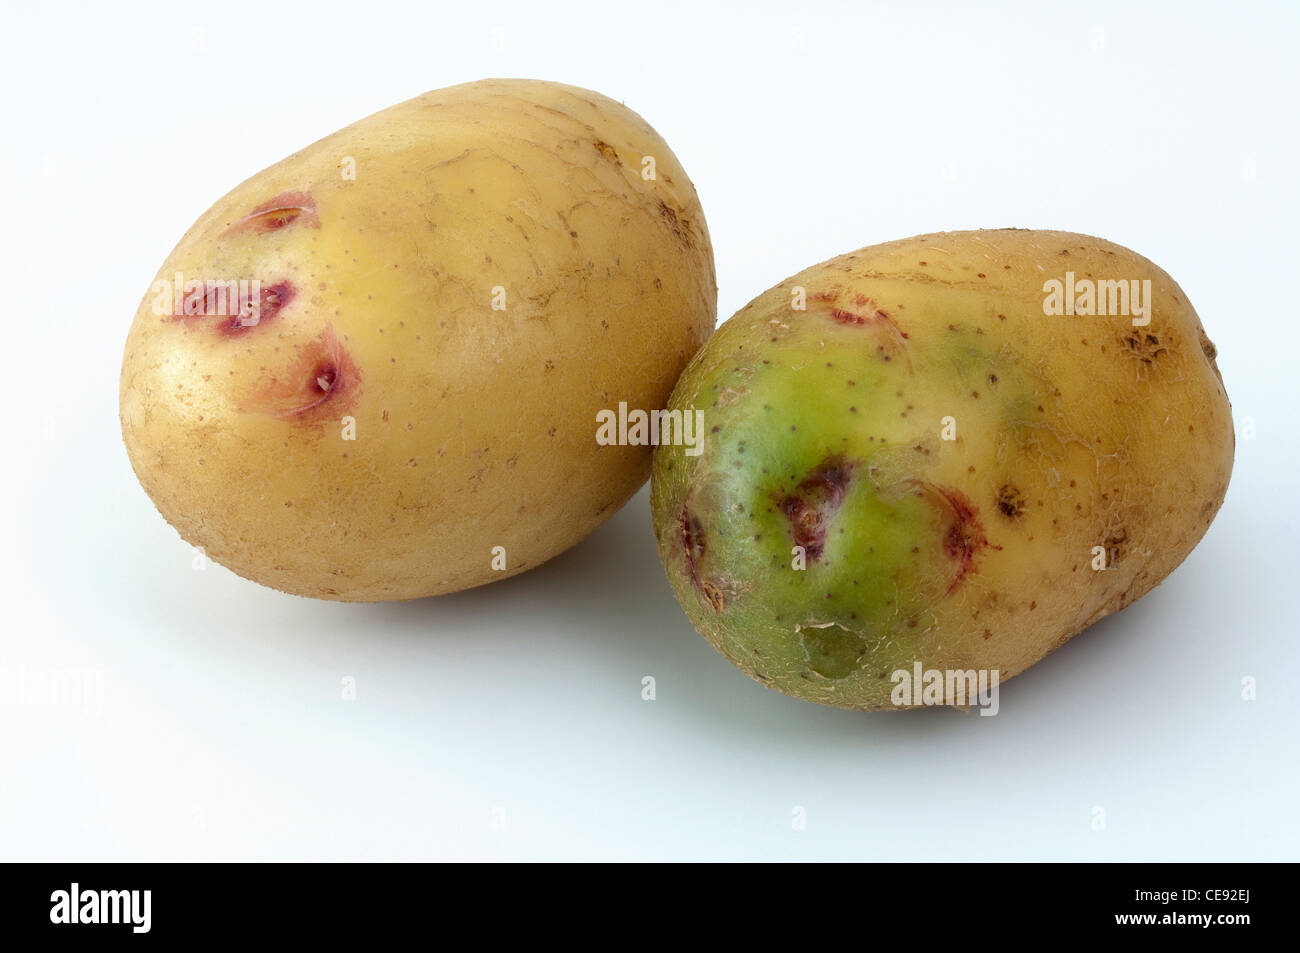 La papa (Solanum tuberosum), variedad: Quarta. Los tubérculos, uno de ellos con secciones verde debido a la exposición a la luz Foto de stock